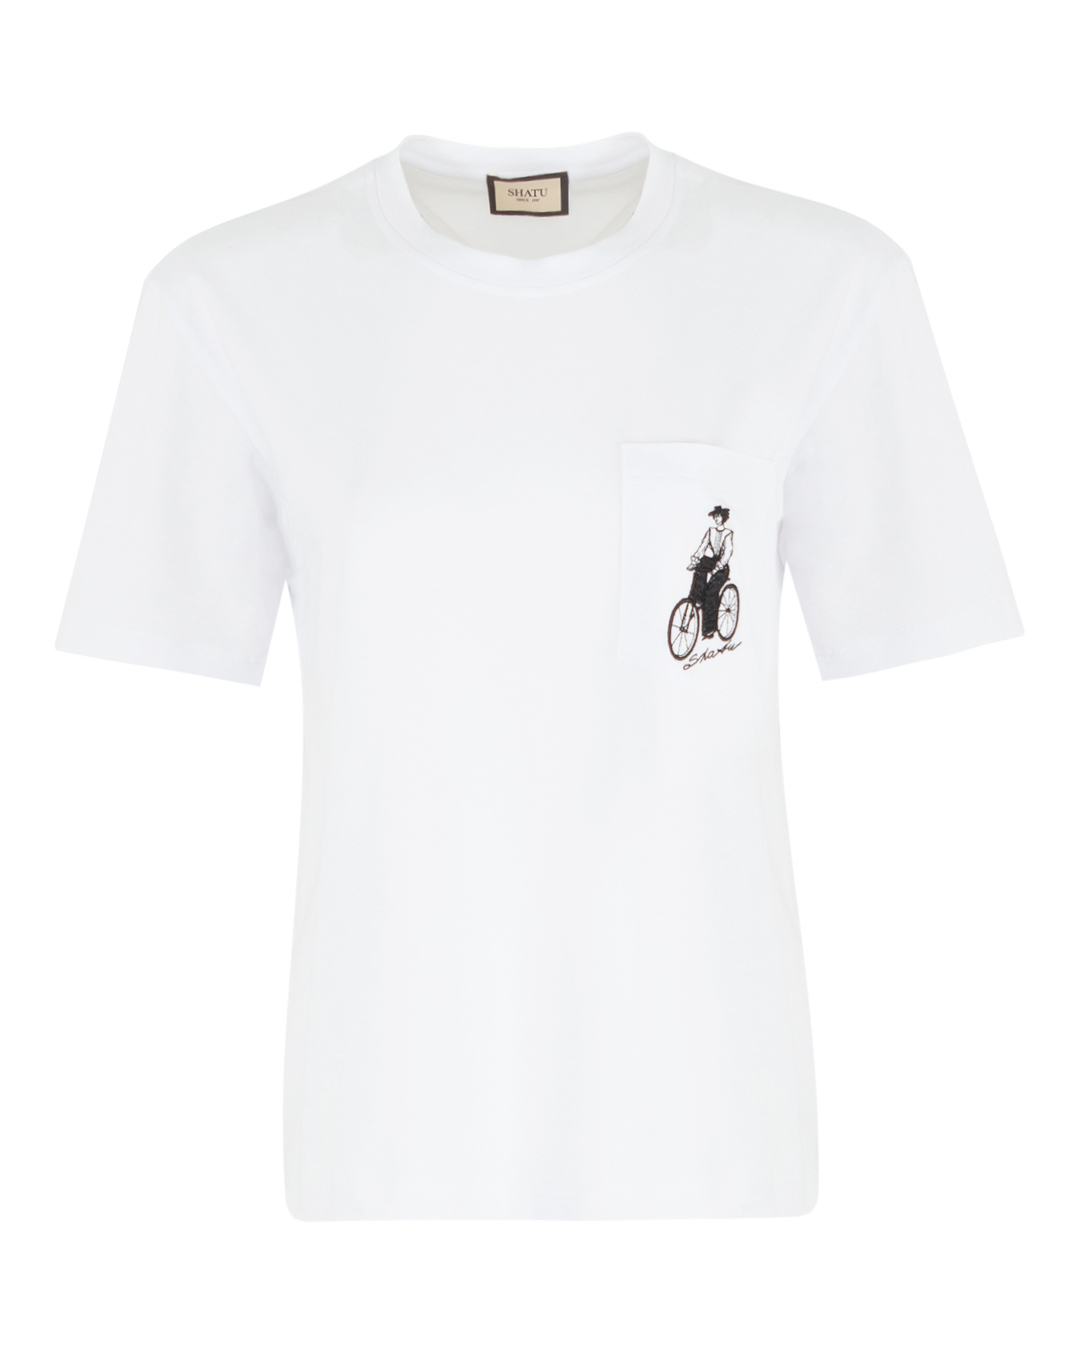 футболка Shatu SH3424_Т210/3 белый+принт l, размер l, цвет белый+принт